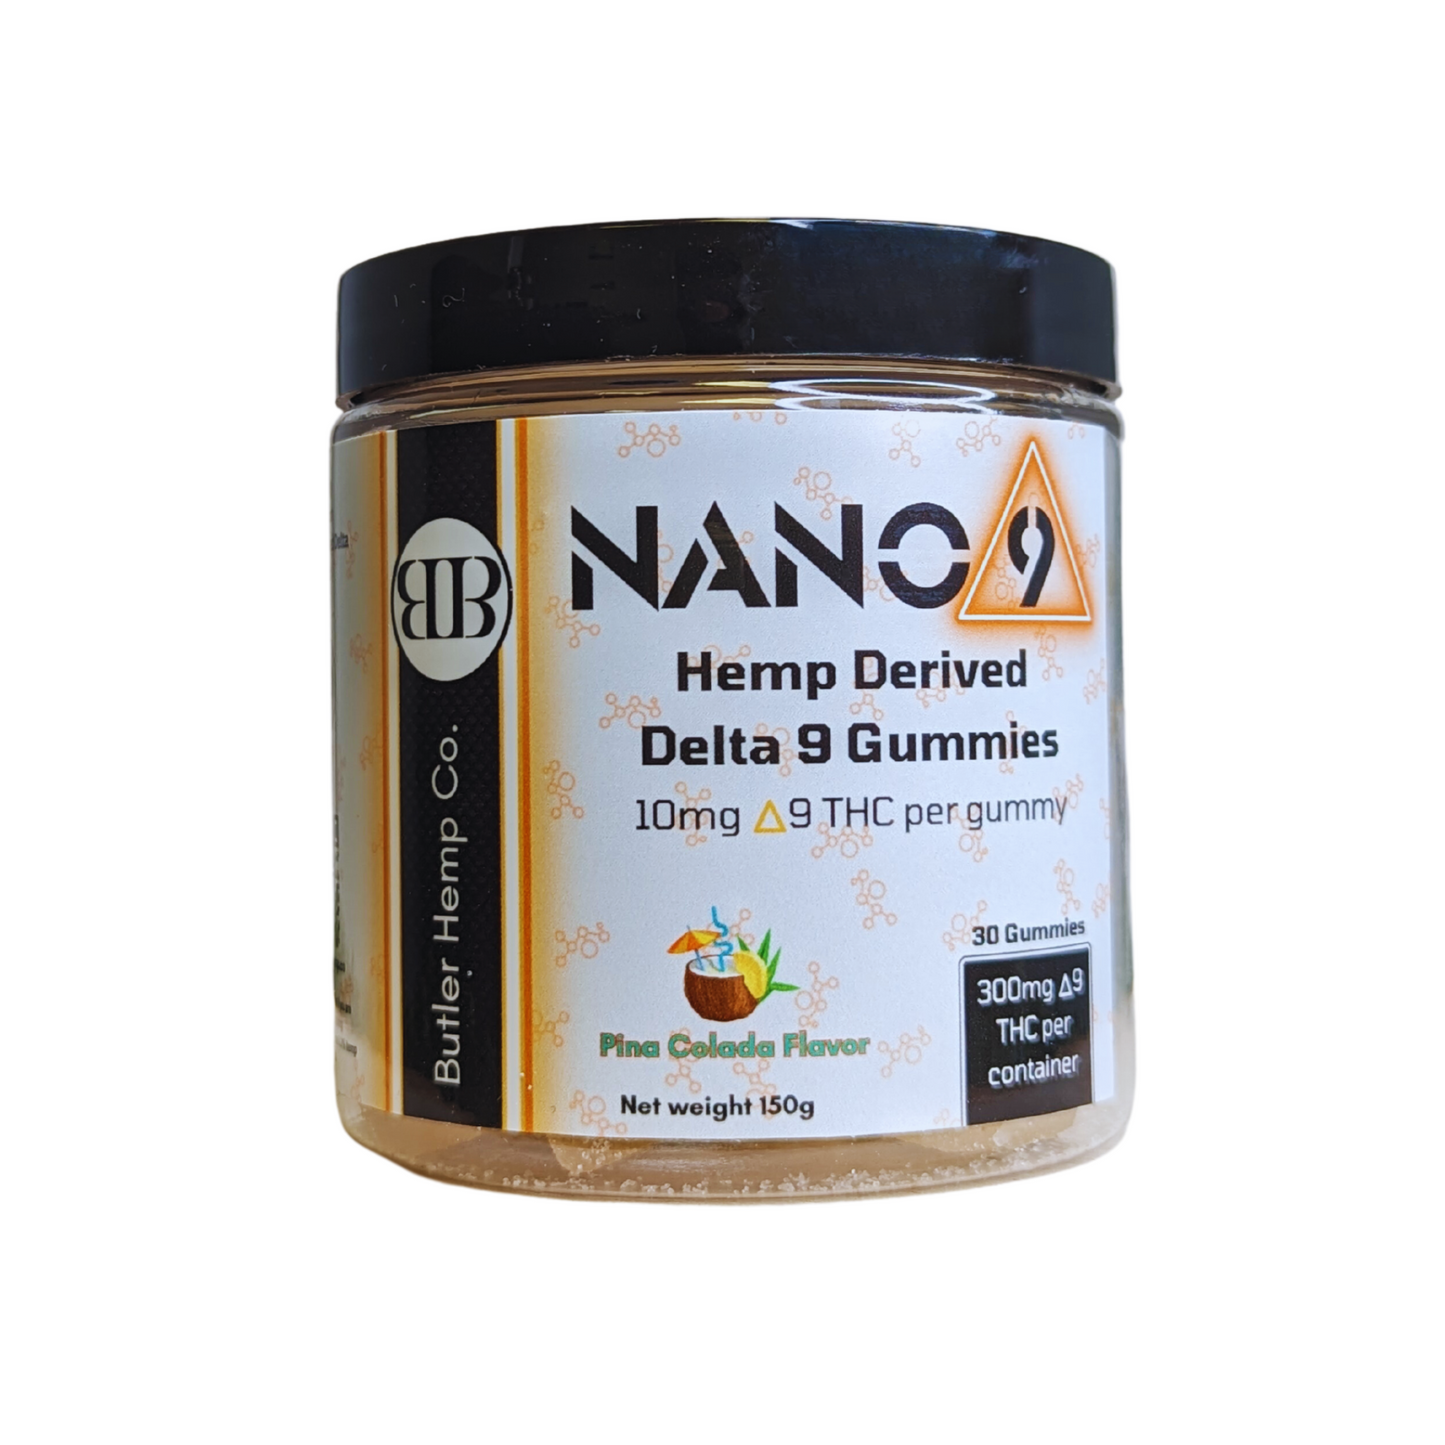 Nano 9 Hemp-Derived Delta 9 Gummies 30 Count